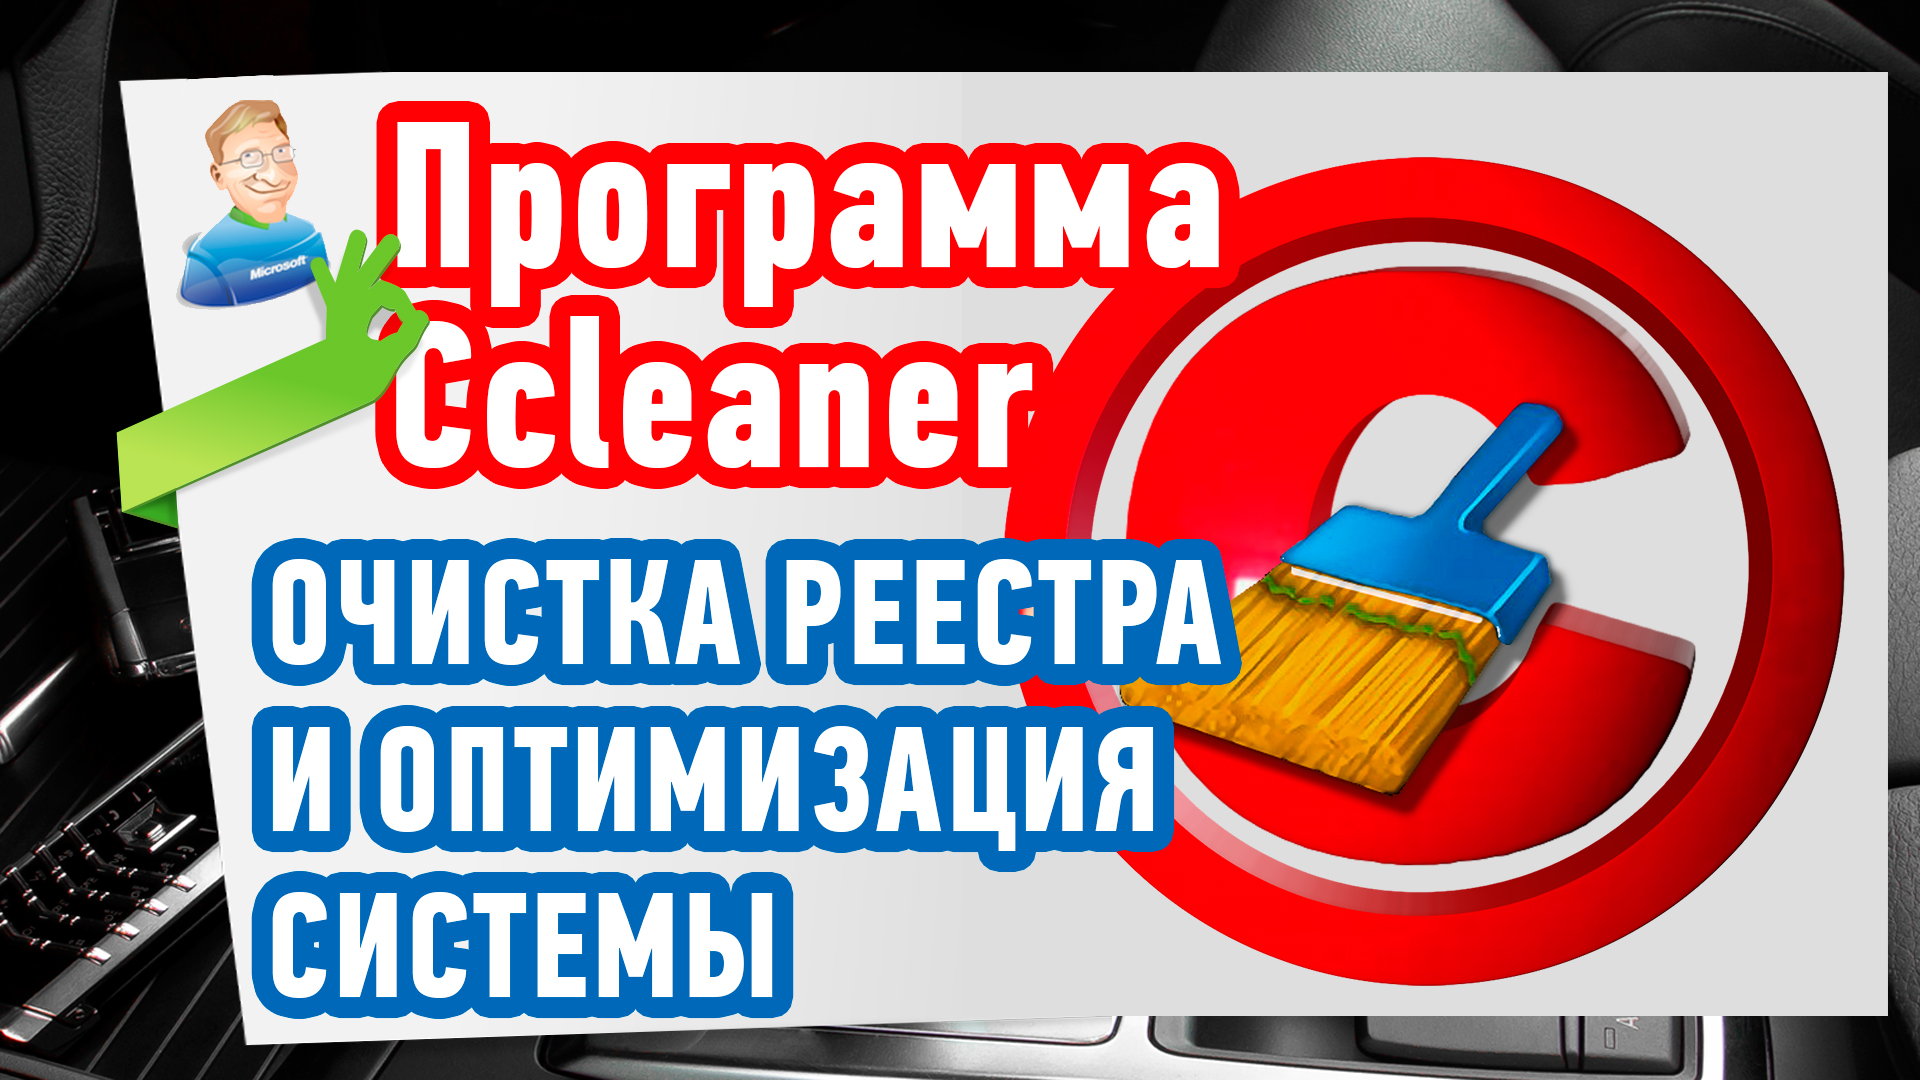 Как почистить реестр? Ccleaner - Программа для чистки реестра